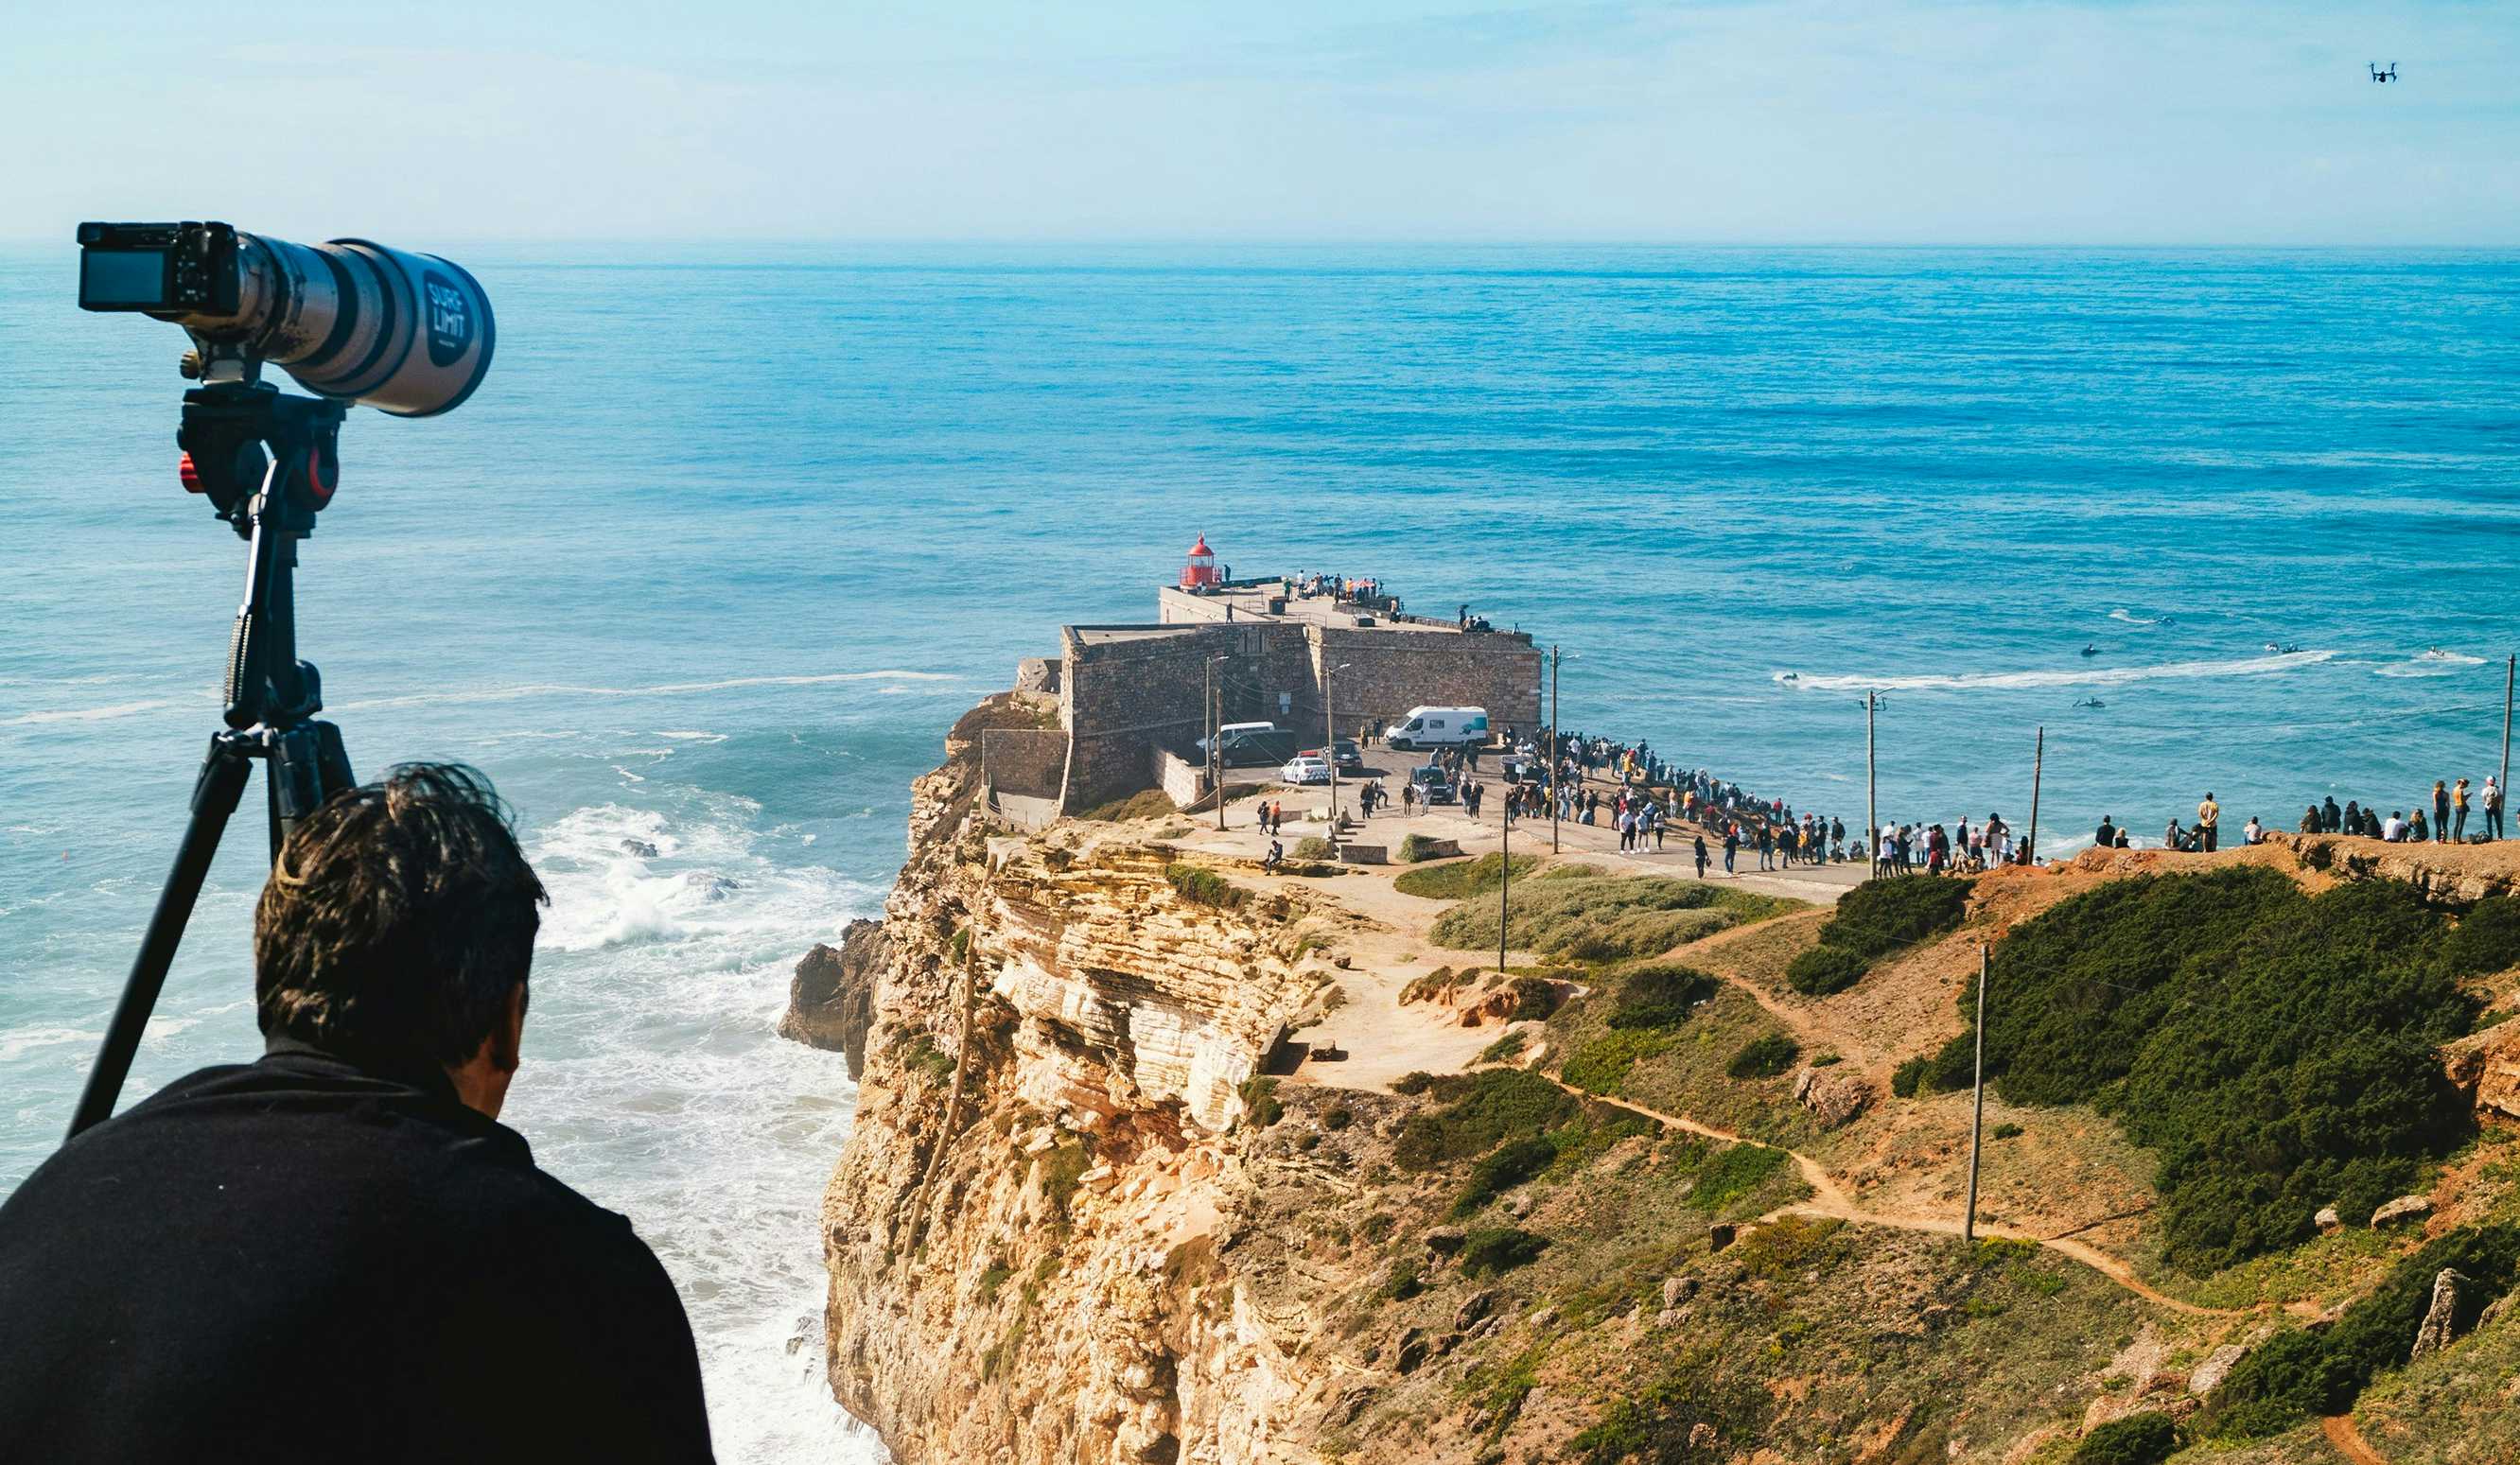 Fotografo de surf sentado olhando para praia de nazaré em portugal.